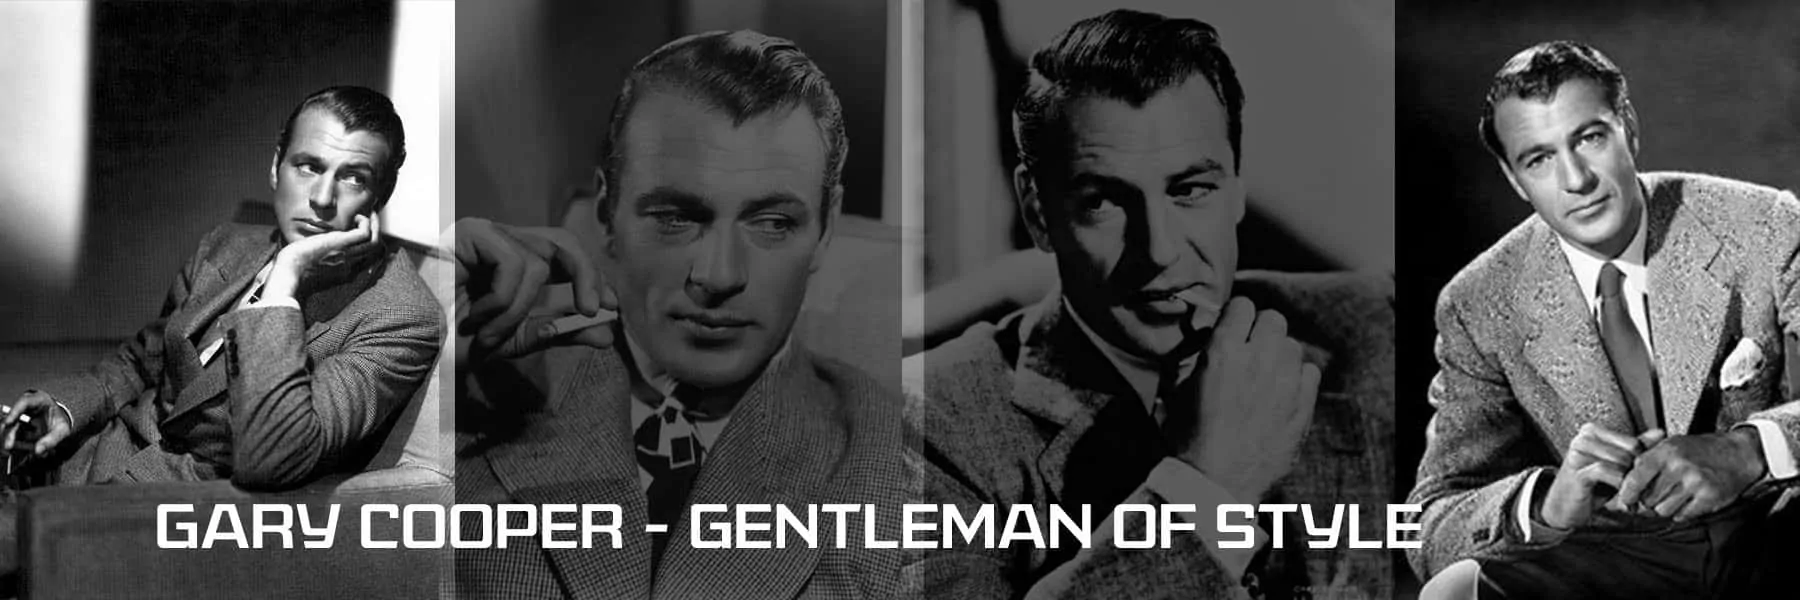 Gary Cooper Gentleman of Style1